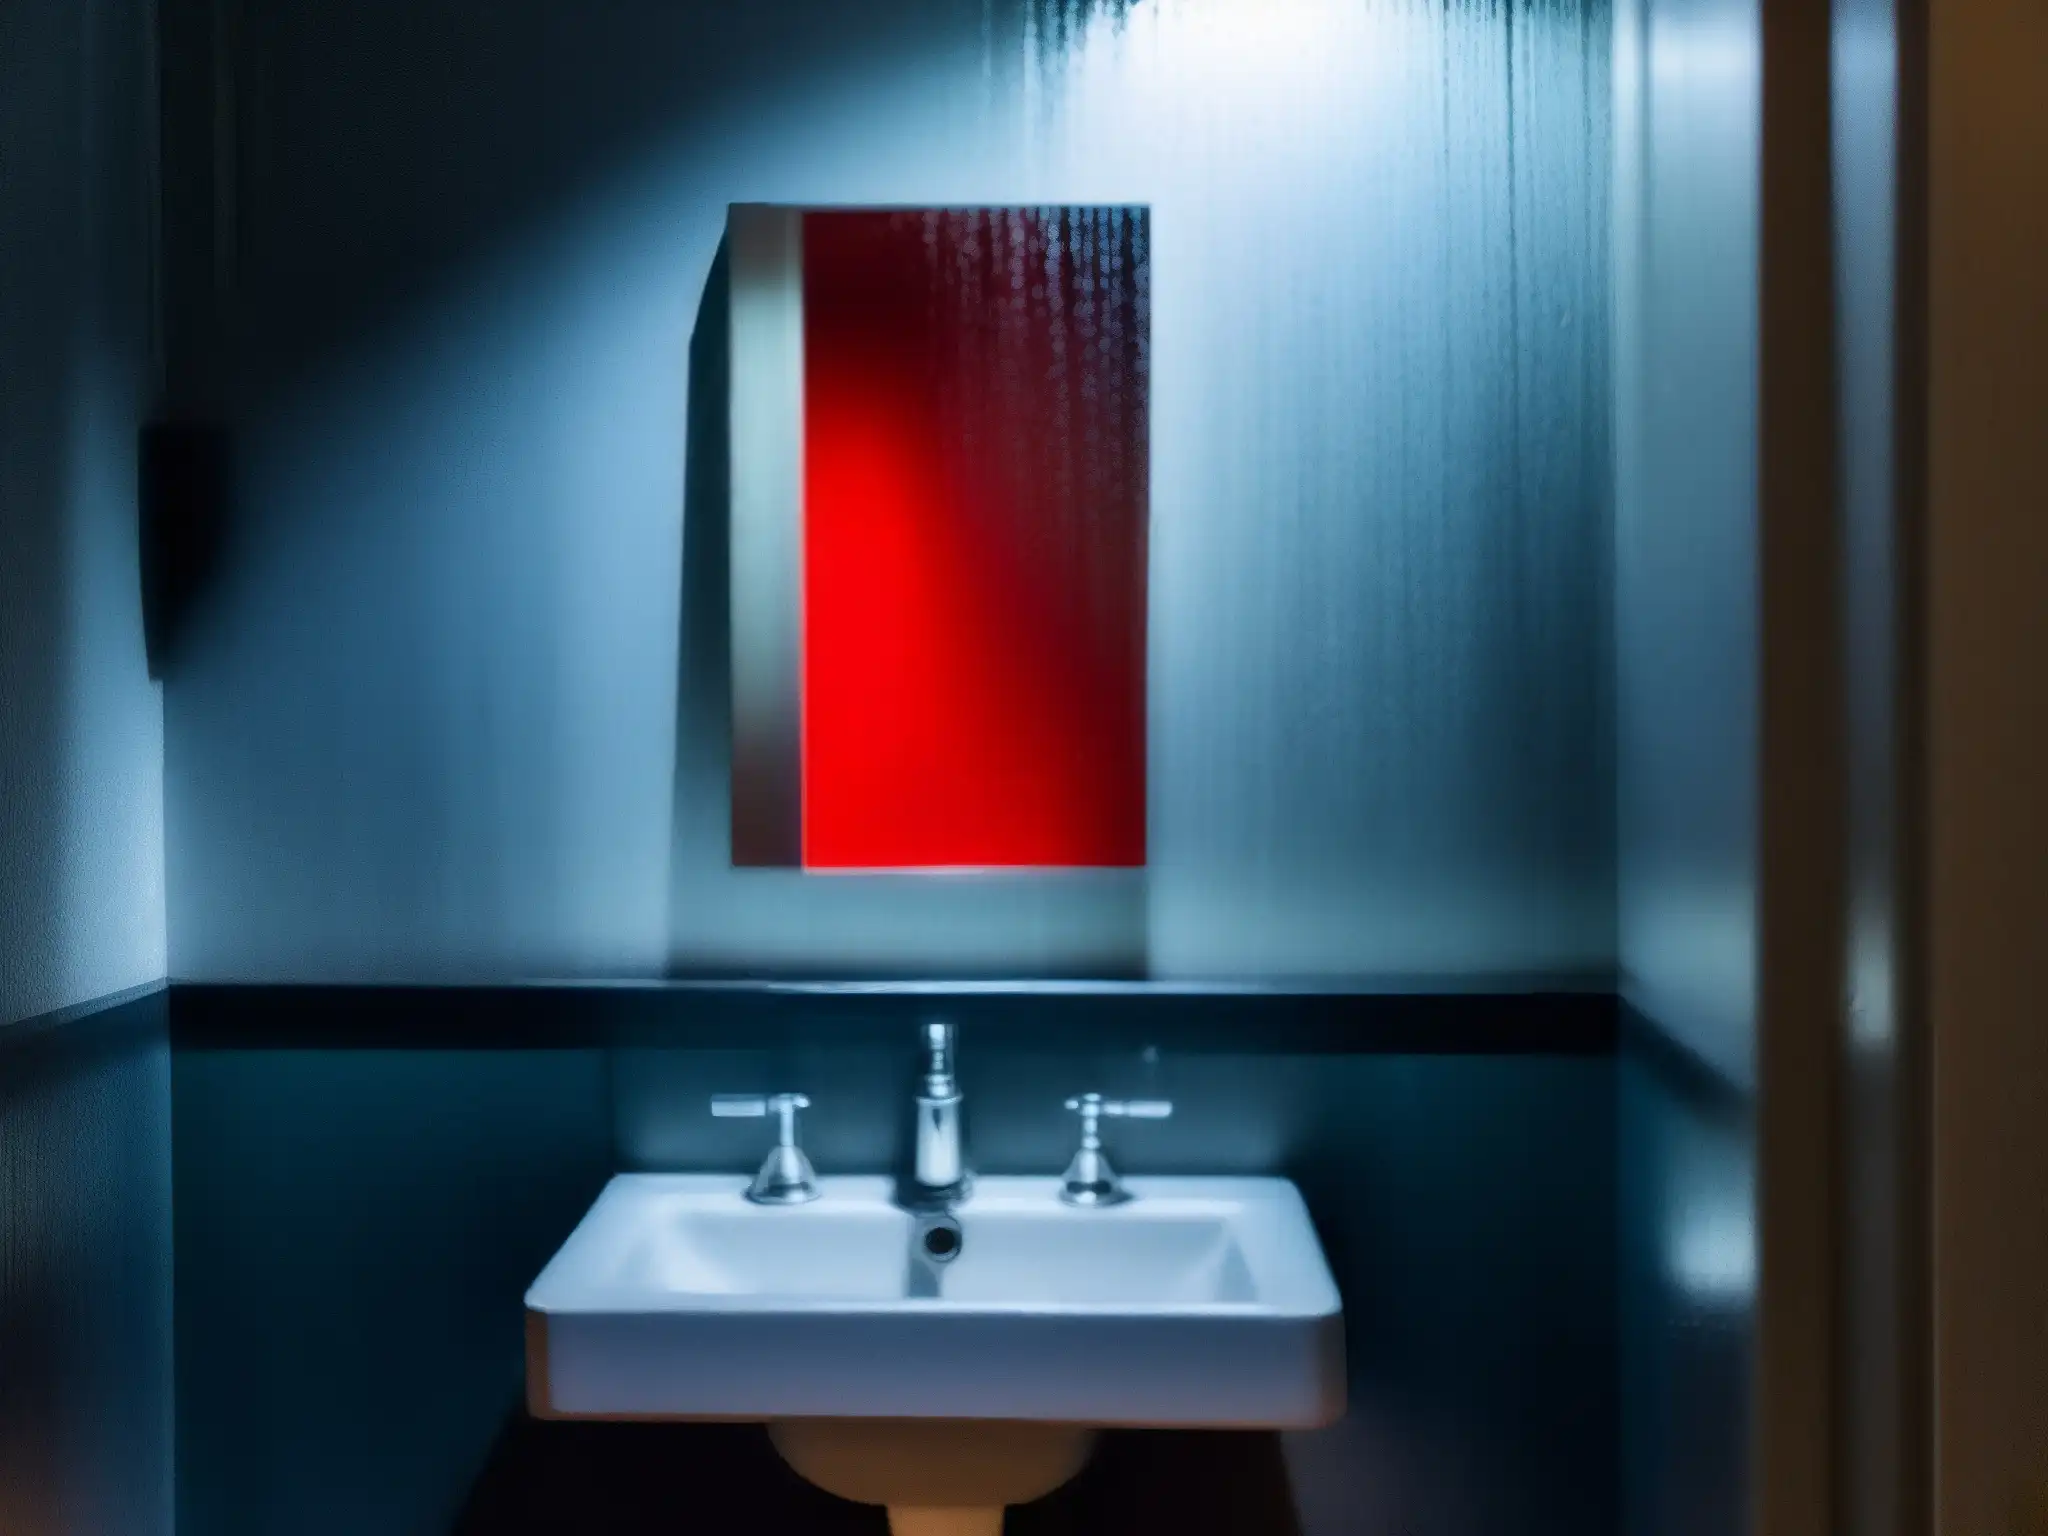 Reflejo fantasmal en espejo empañado, evocando la evolución de la leyenda Bloody Mary en la era digital